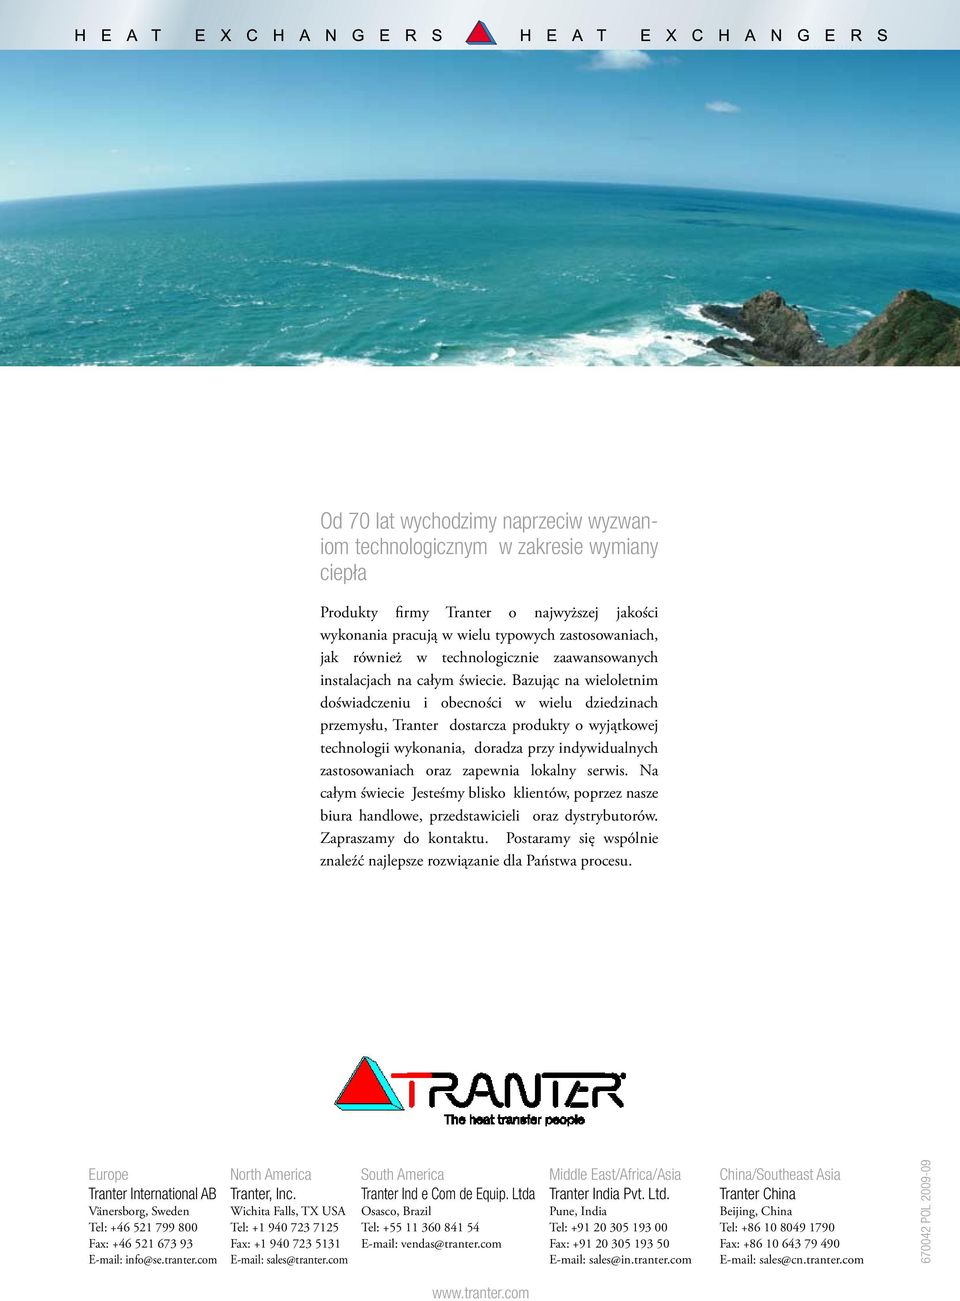 Bazując na wieloletnim doświadczeniu i obecności w wielu dziedzinach przemysłu, Tranter dostarcza produkty o wyjątkowej technologii wykonania, doradza przy indywidualnych zastosowaniach oraz zapewnia